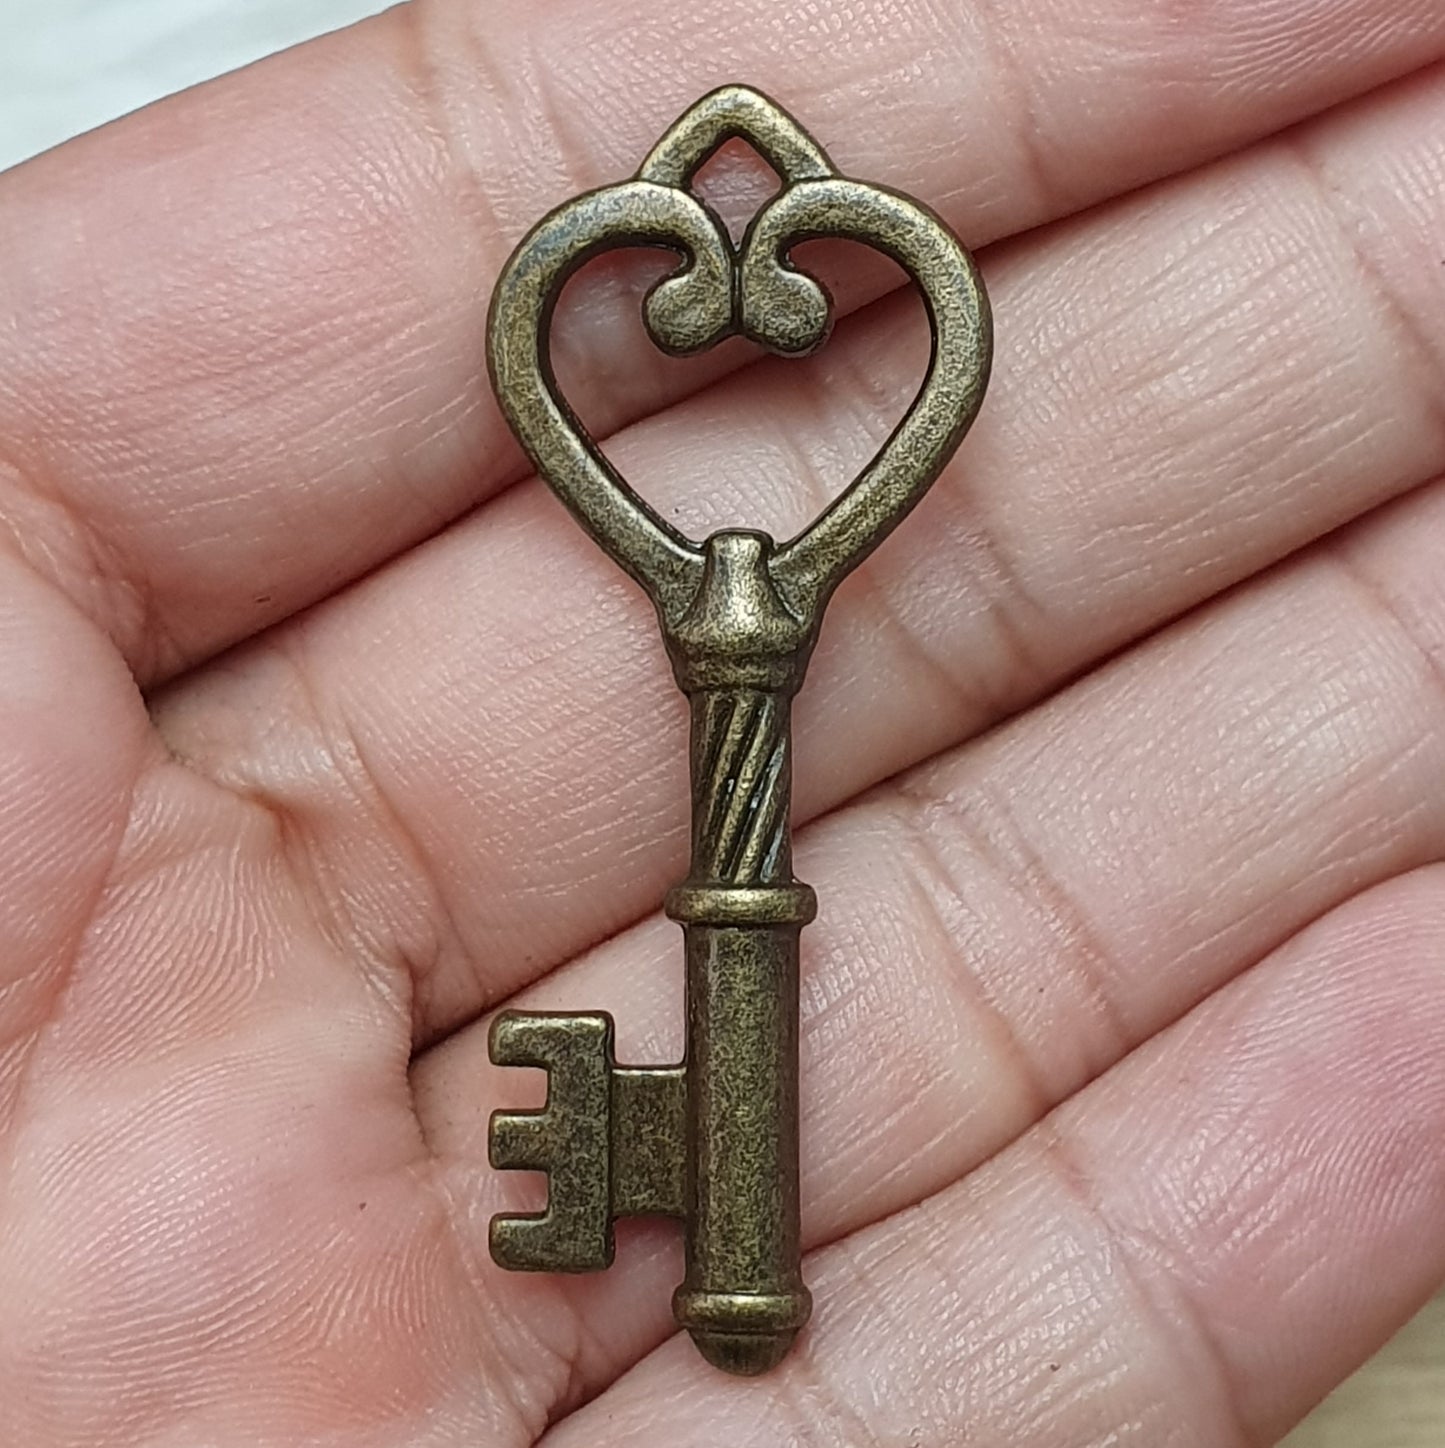 1x Anhänger Schlüssel, antik bronzefarbig, 46mm